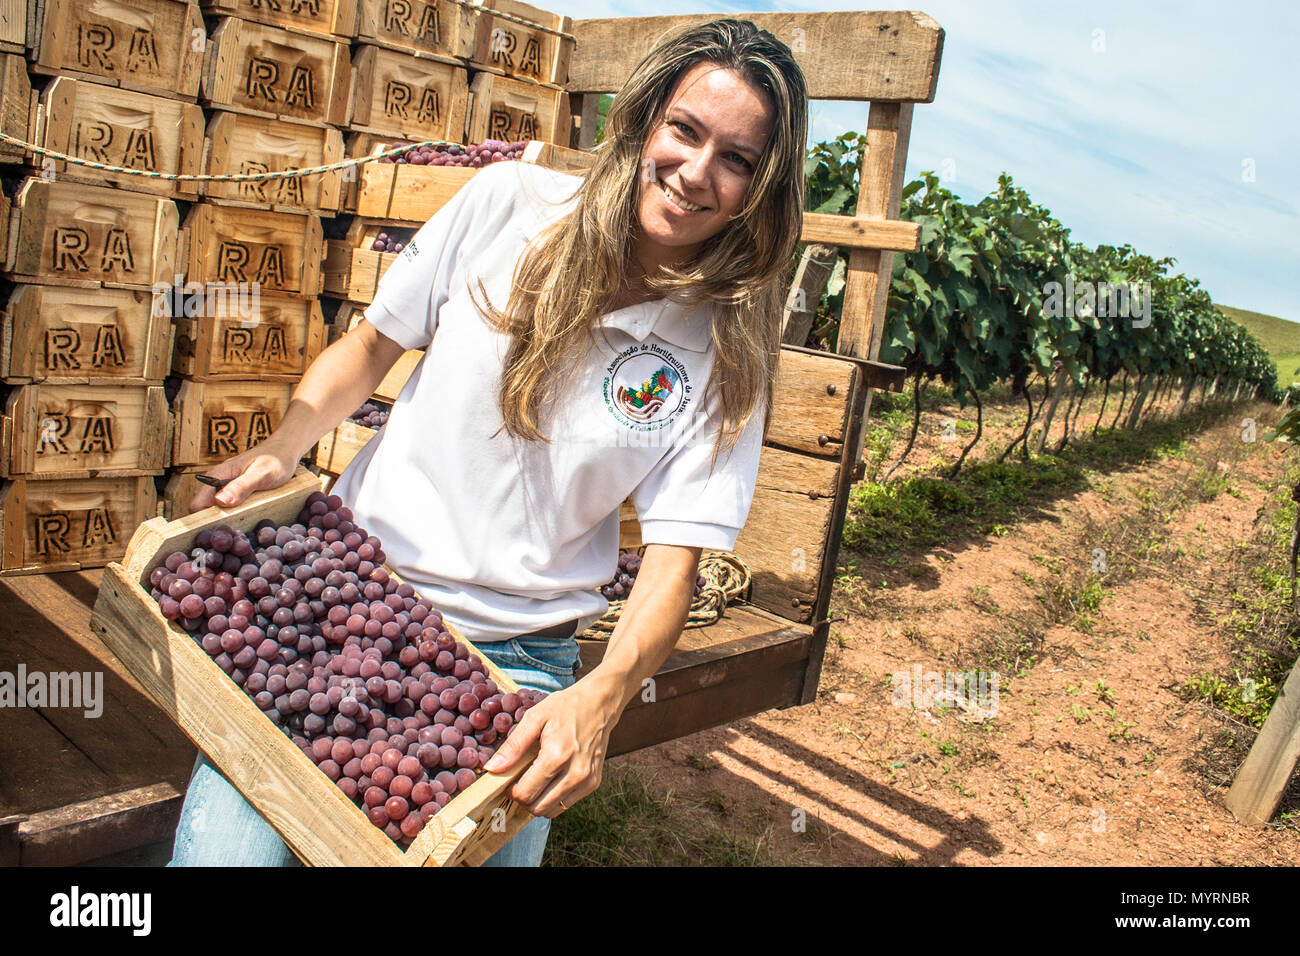 Jarinu, Sao Paulo, Brésil, le 14 décembre 2011. Portrait de femme sur un tracteur chargé avec des caisses en bois avec des raisins récoltés dans un vignoble Banque D'Images